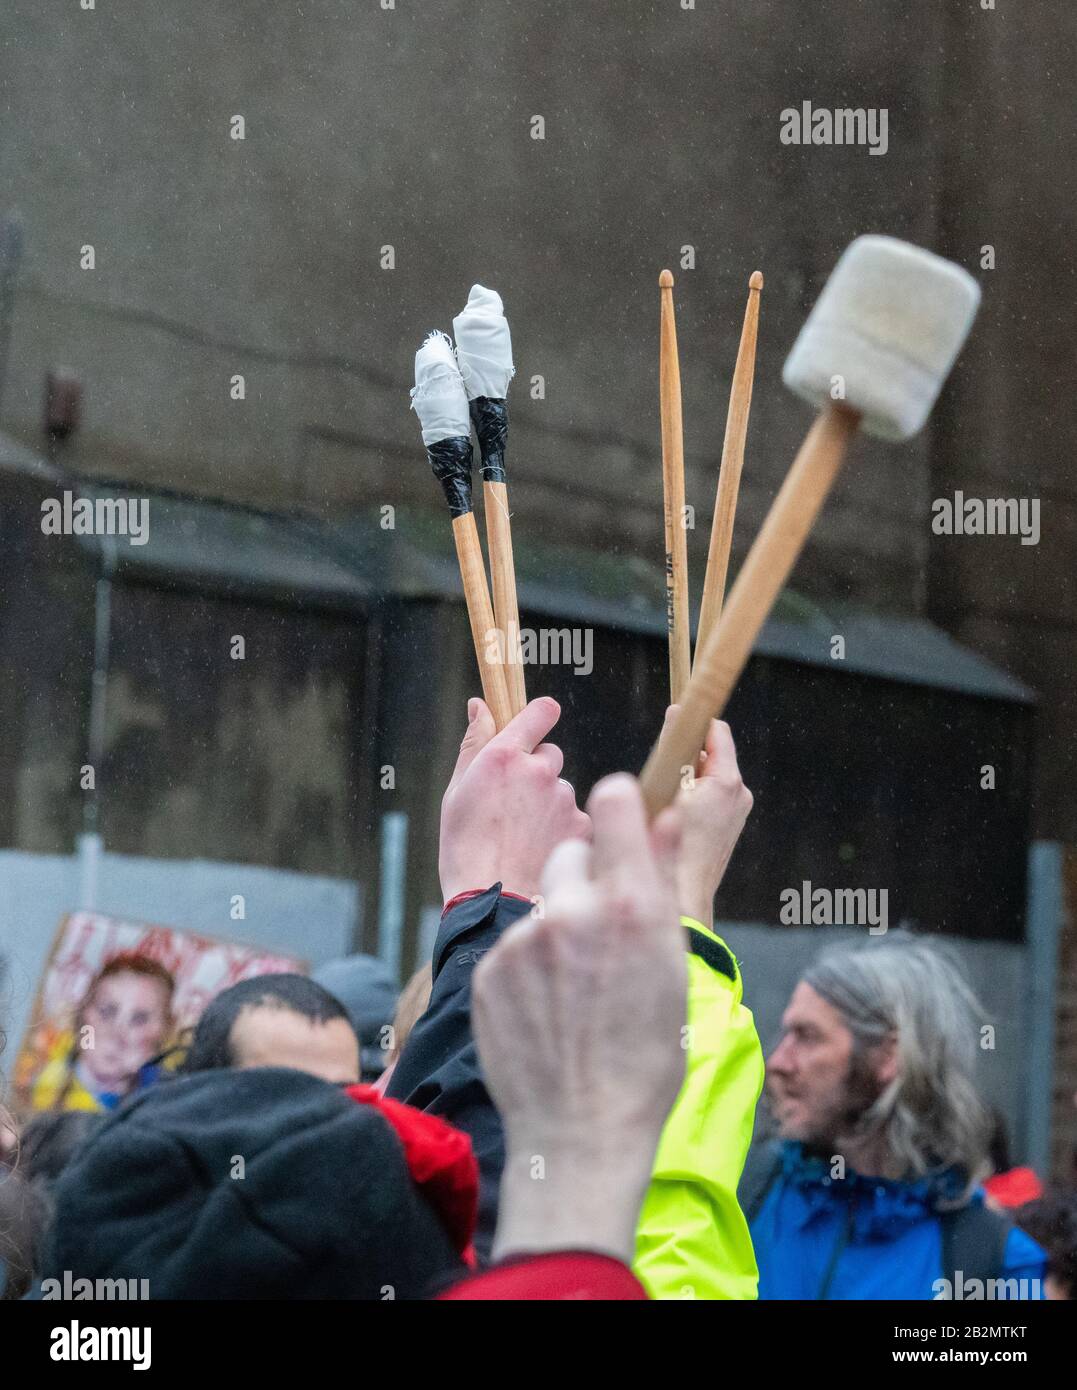 Drumsticks hielten sich Ende März für Klima- und Schulstreik Bristol 28. Februar 2020 auf, nachdem Greta Thumberg auf College Green gesprochen hatte Stockfoto